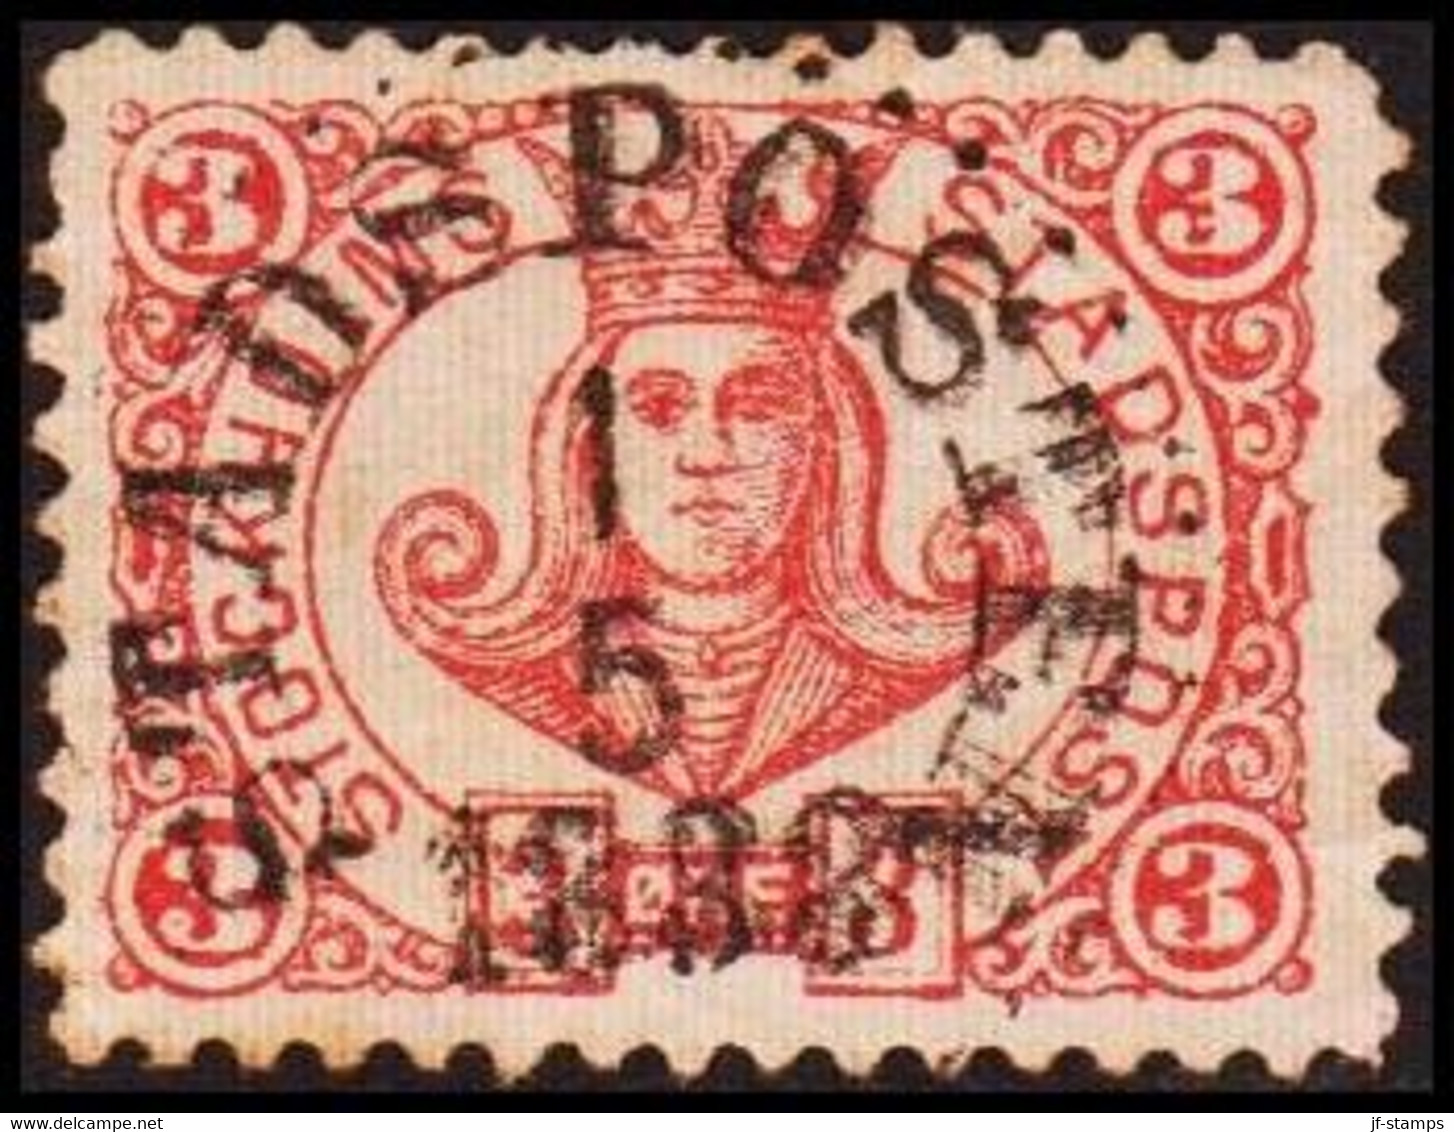 1887. SVERIGE.  STOCKHOLMS STADSPOST. 3 ØRE. Danish Ø. Fold. Luxus Cancel.  () - JF411653 - Local Post Stamps